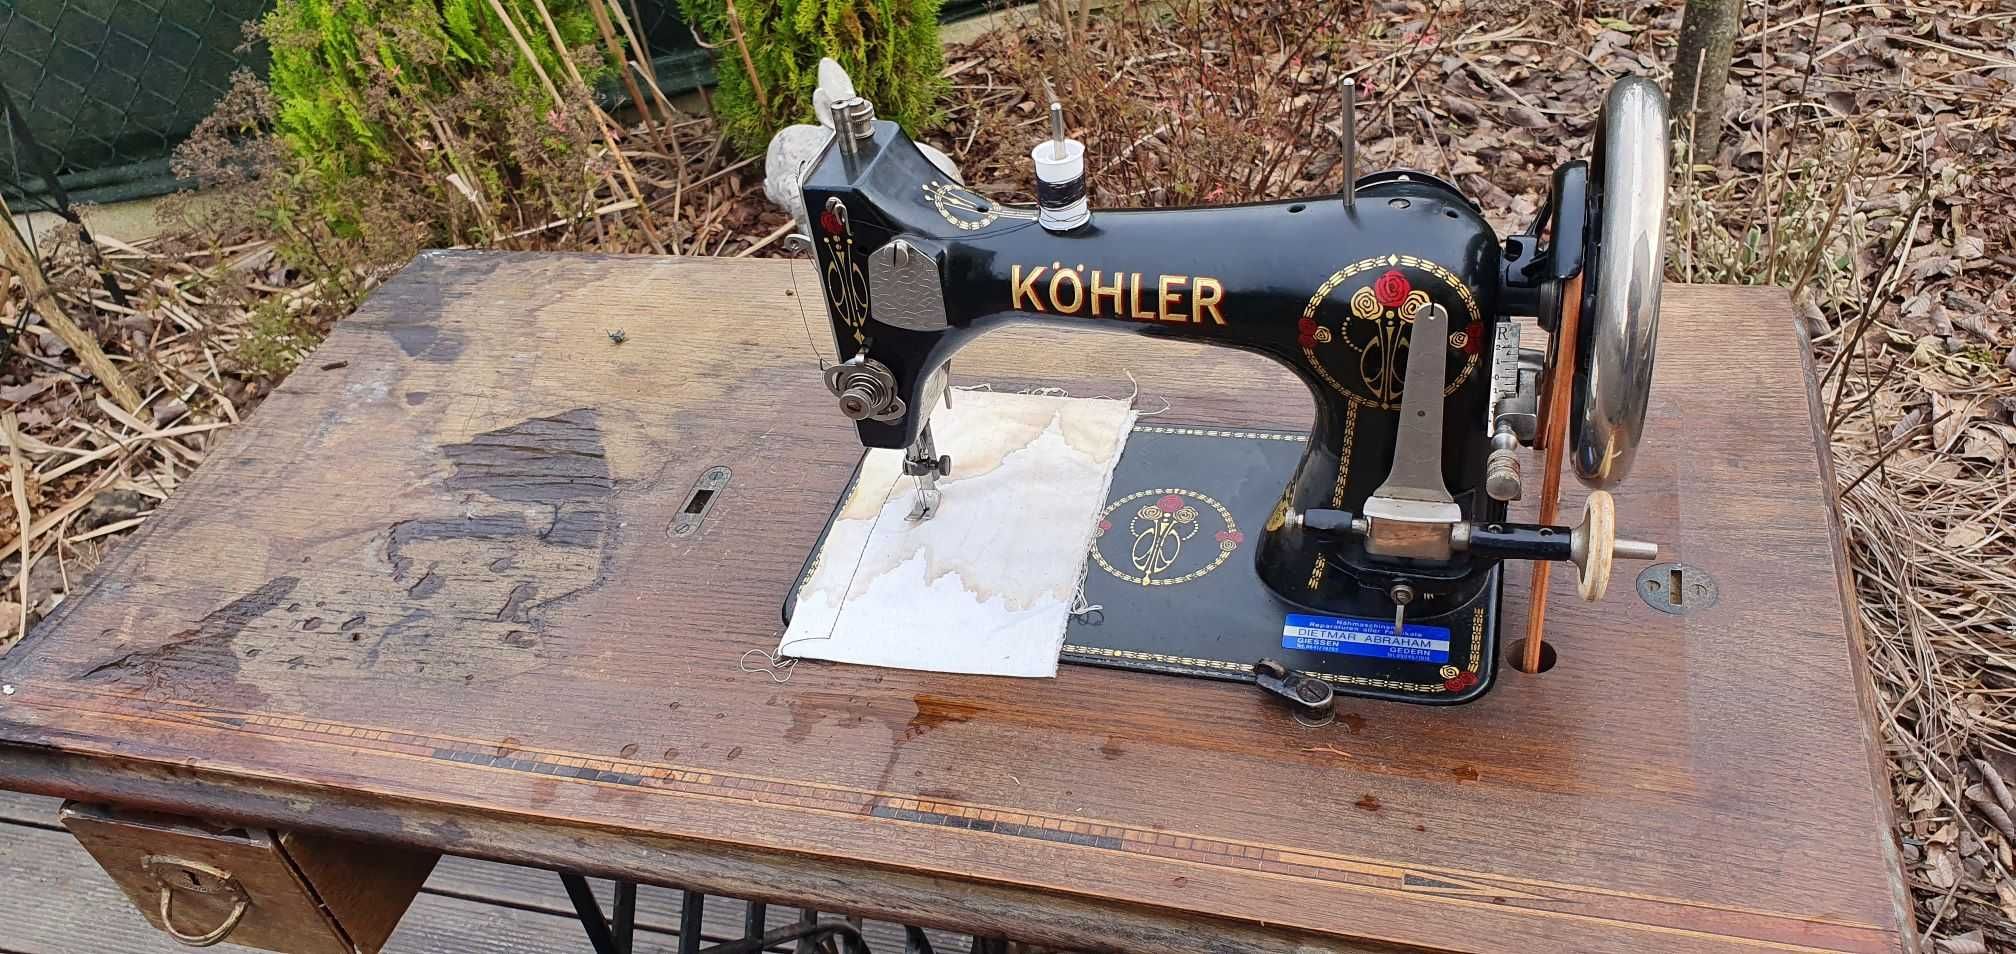 nogi żeliwne od maszyn do szycia Kohler, Singer - idealne na stoliki